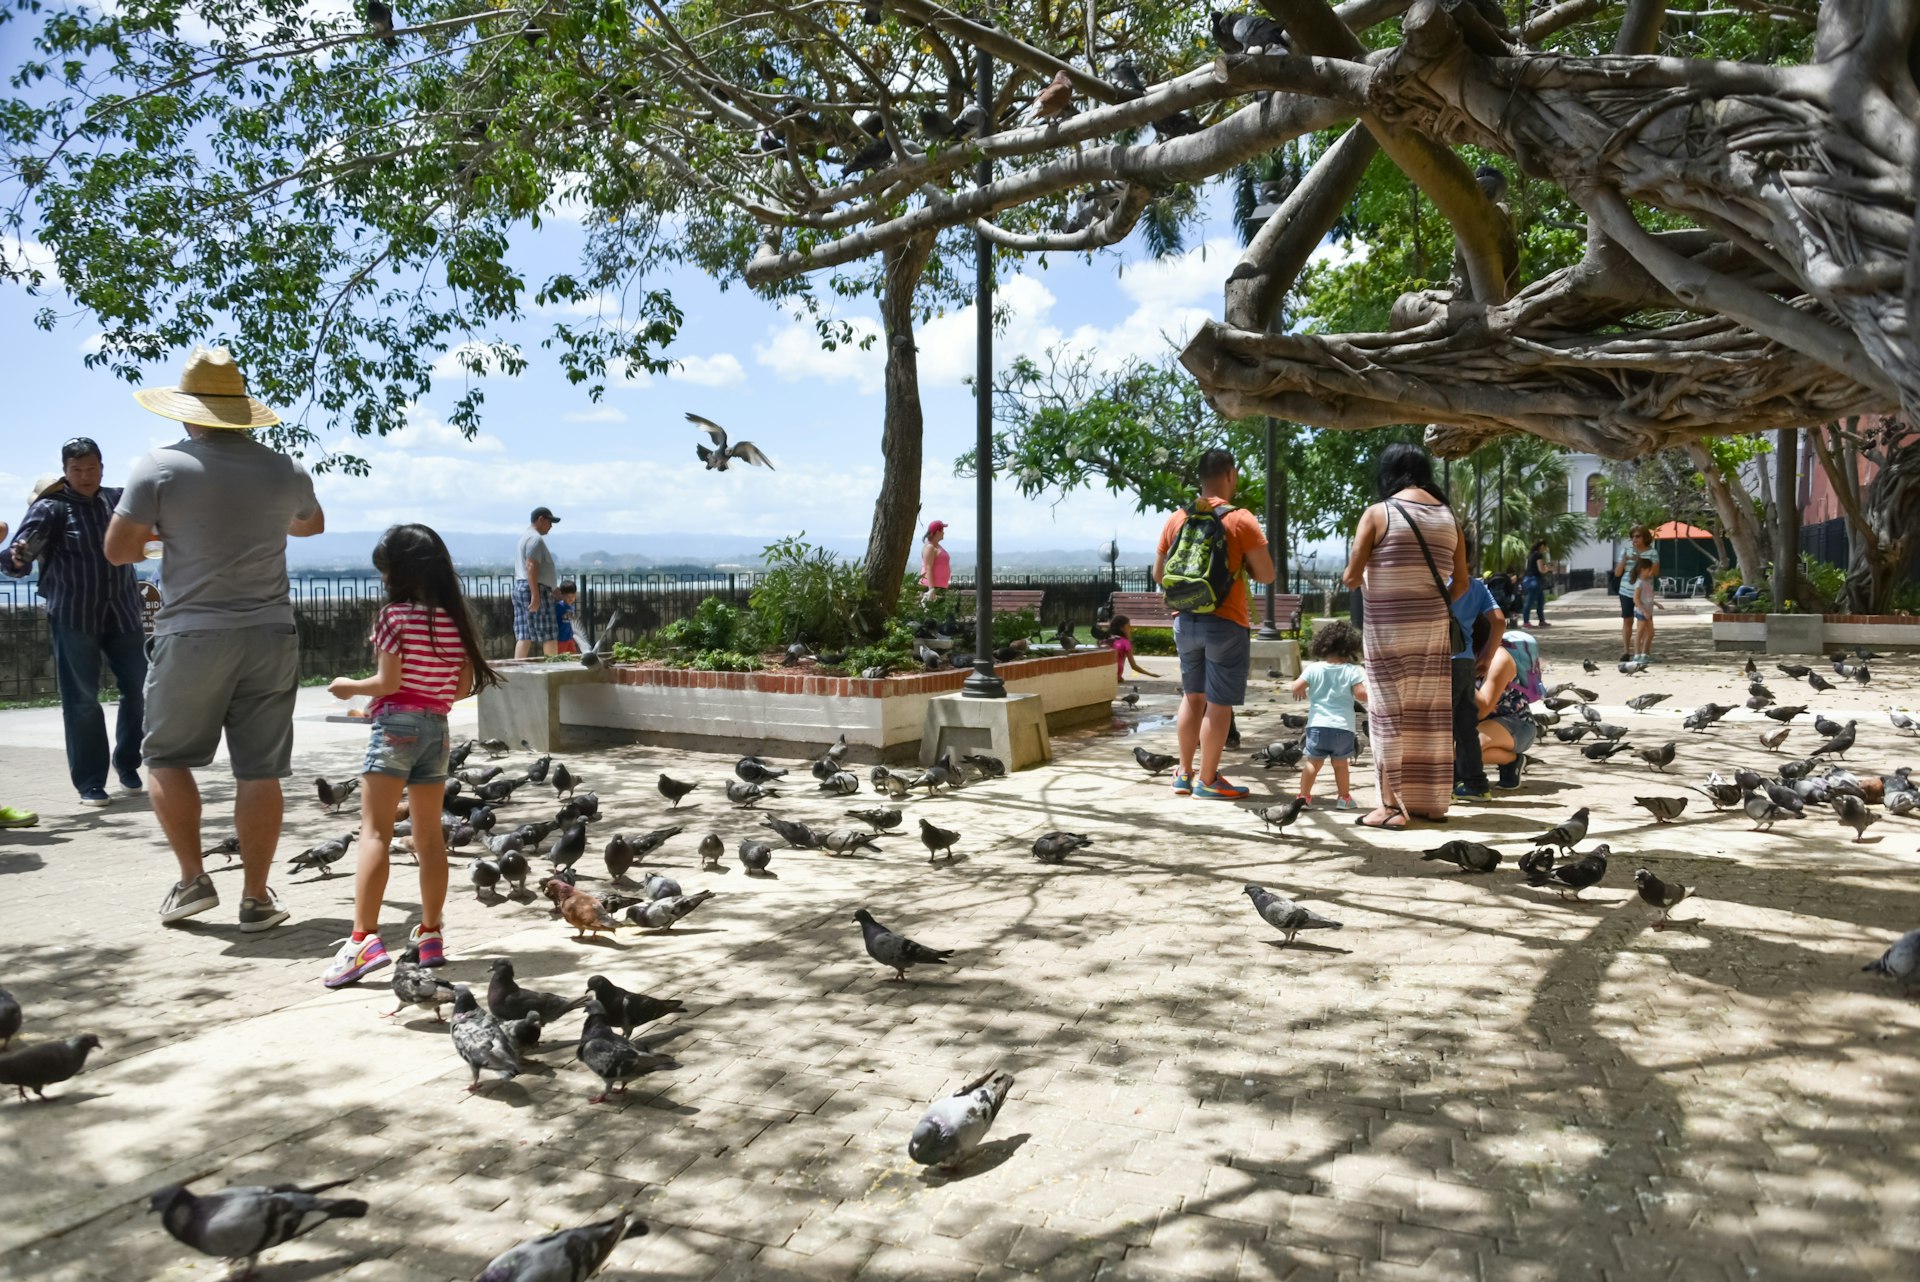 Visitors take a break in the Parque las Palomas 